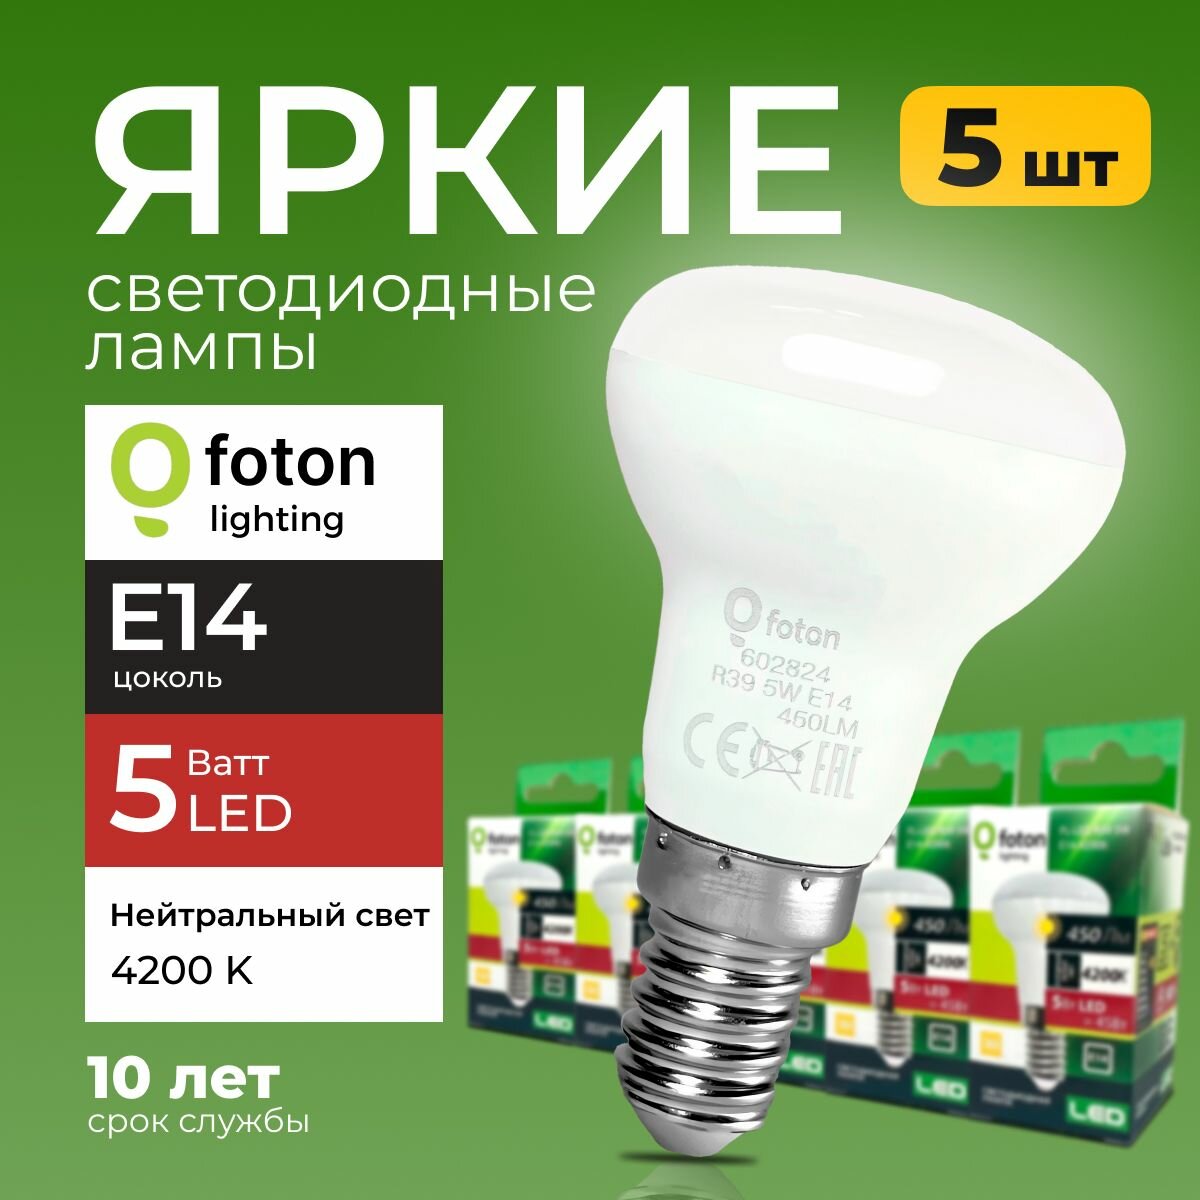 Светодиодная лампа FL-LED R39 220V цоколь E14 5W 4200K 5шт